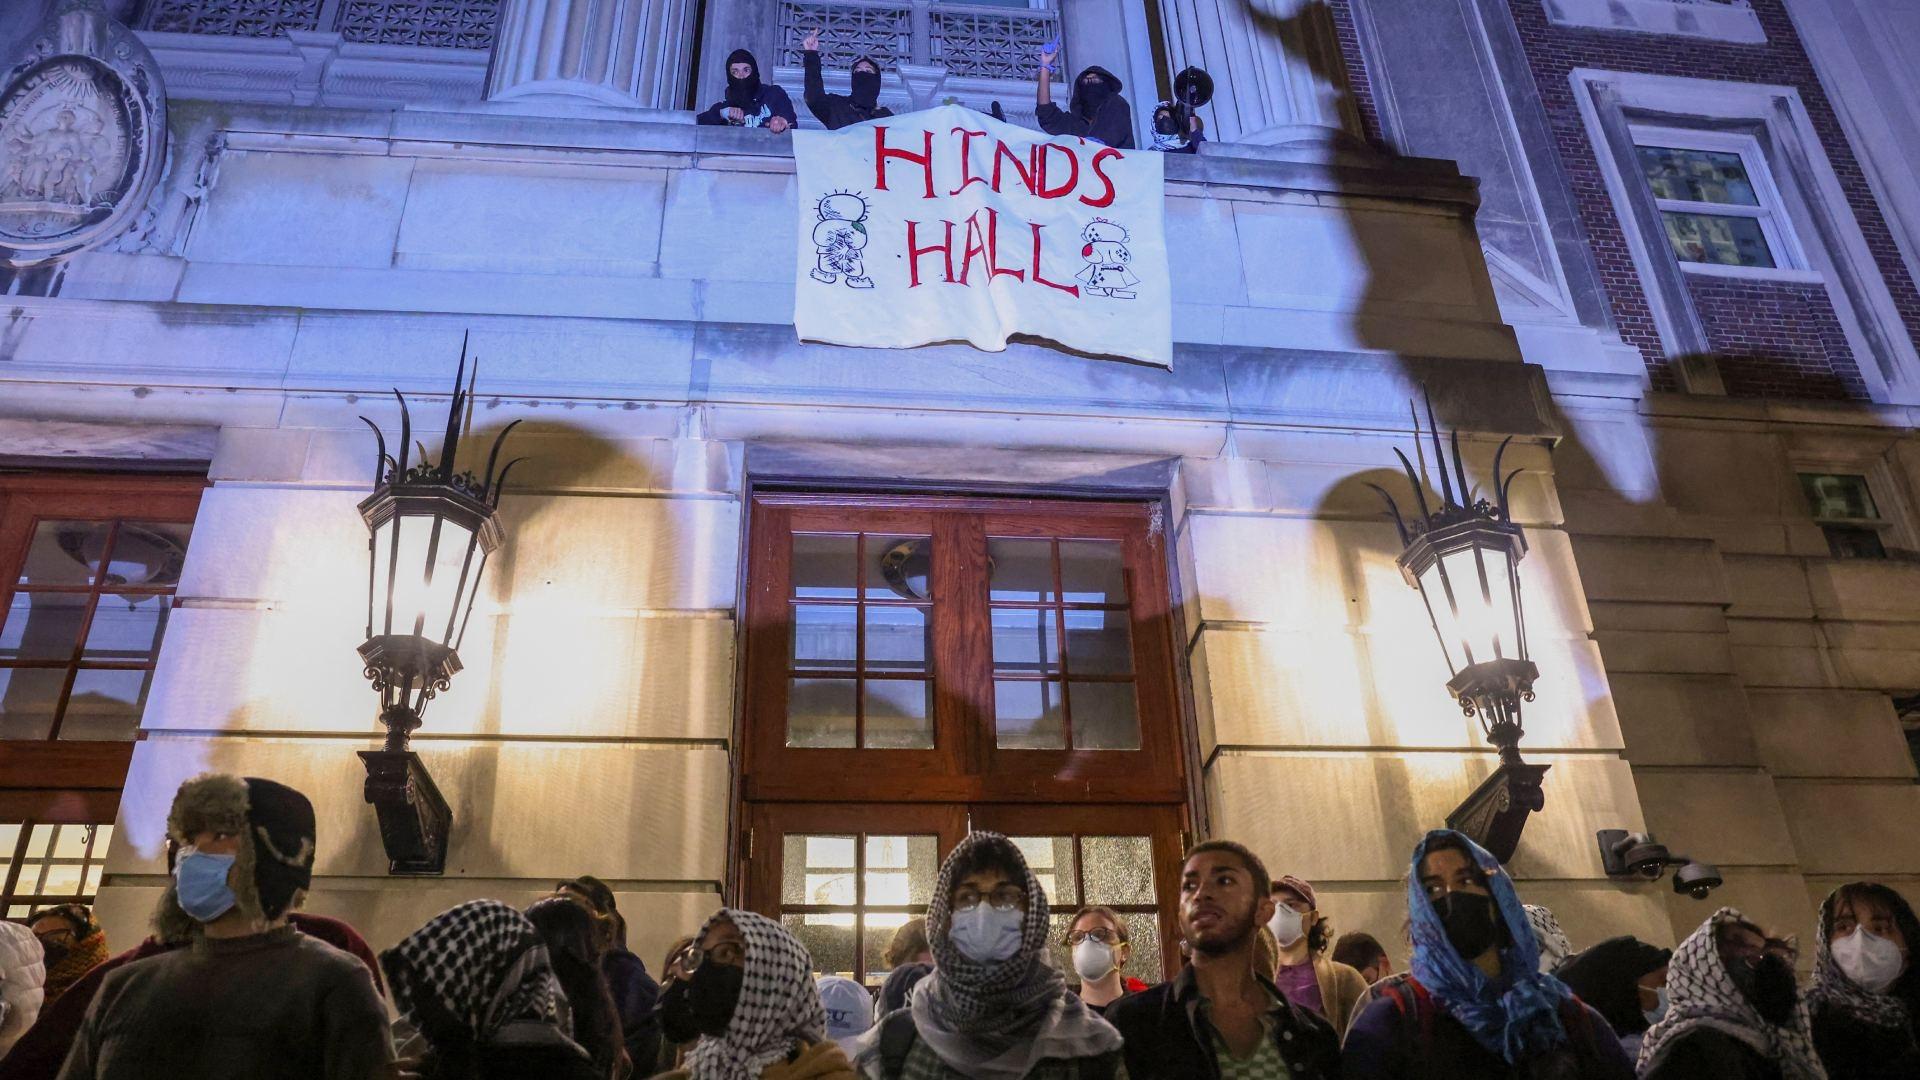 Fotos | Estudiantes Ocupan el Hamilton Hall, Edificio Emblemático de la Universidad de Columbia